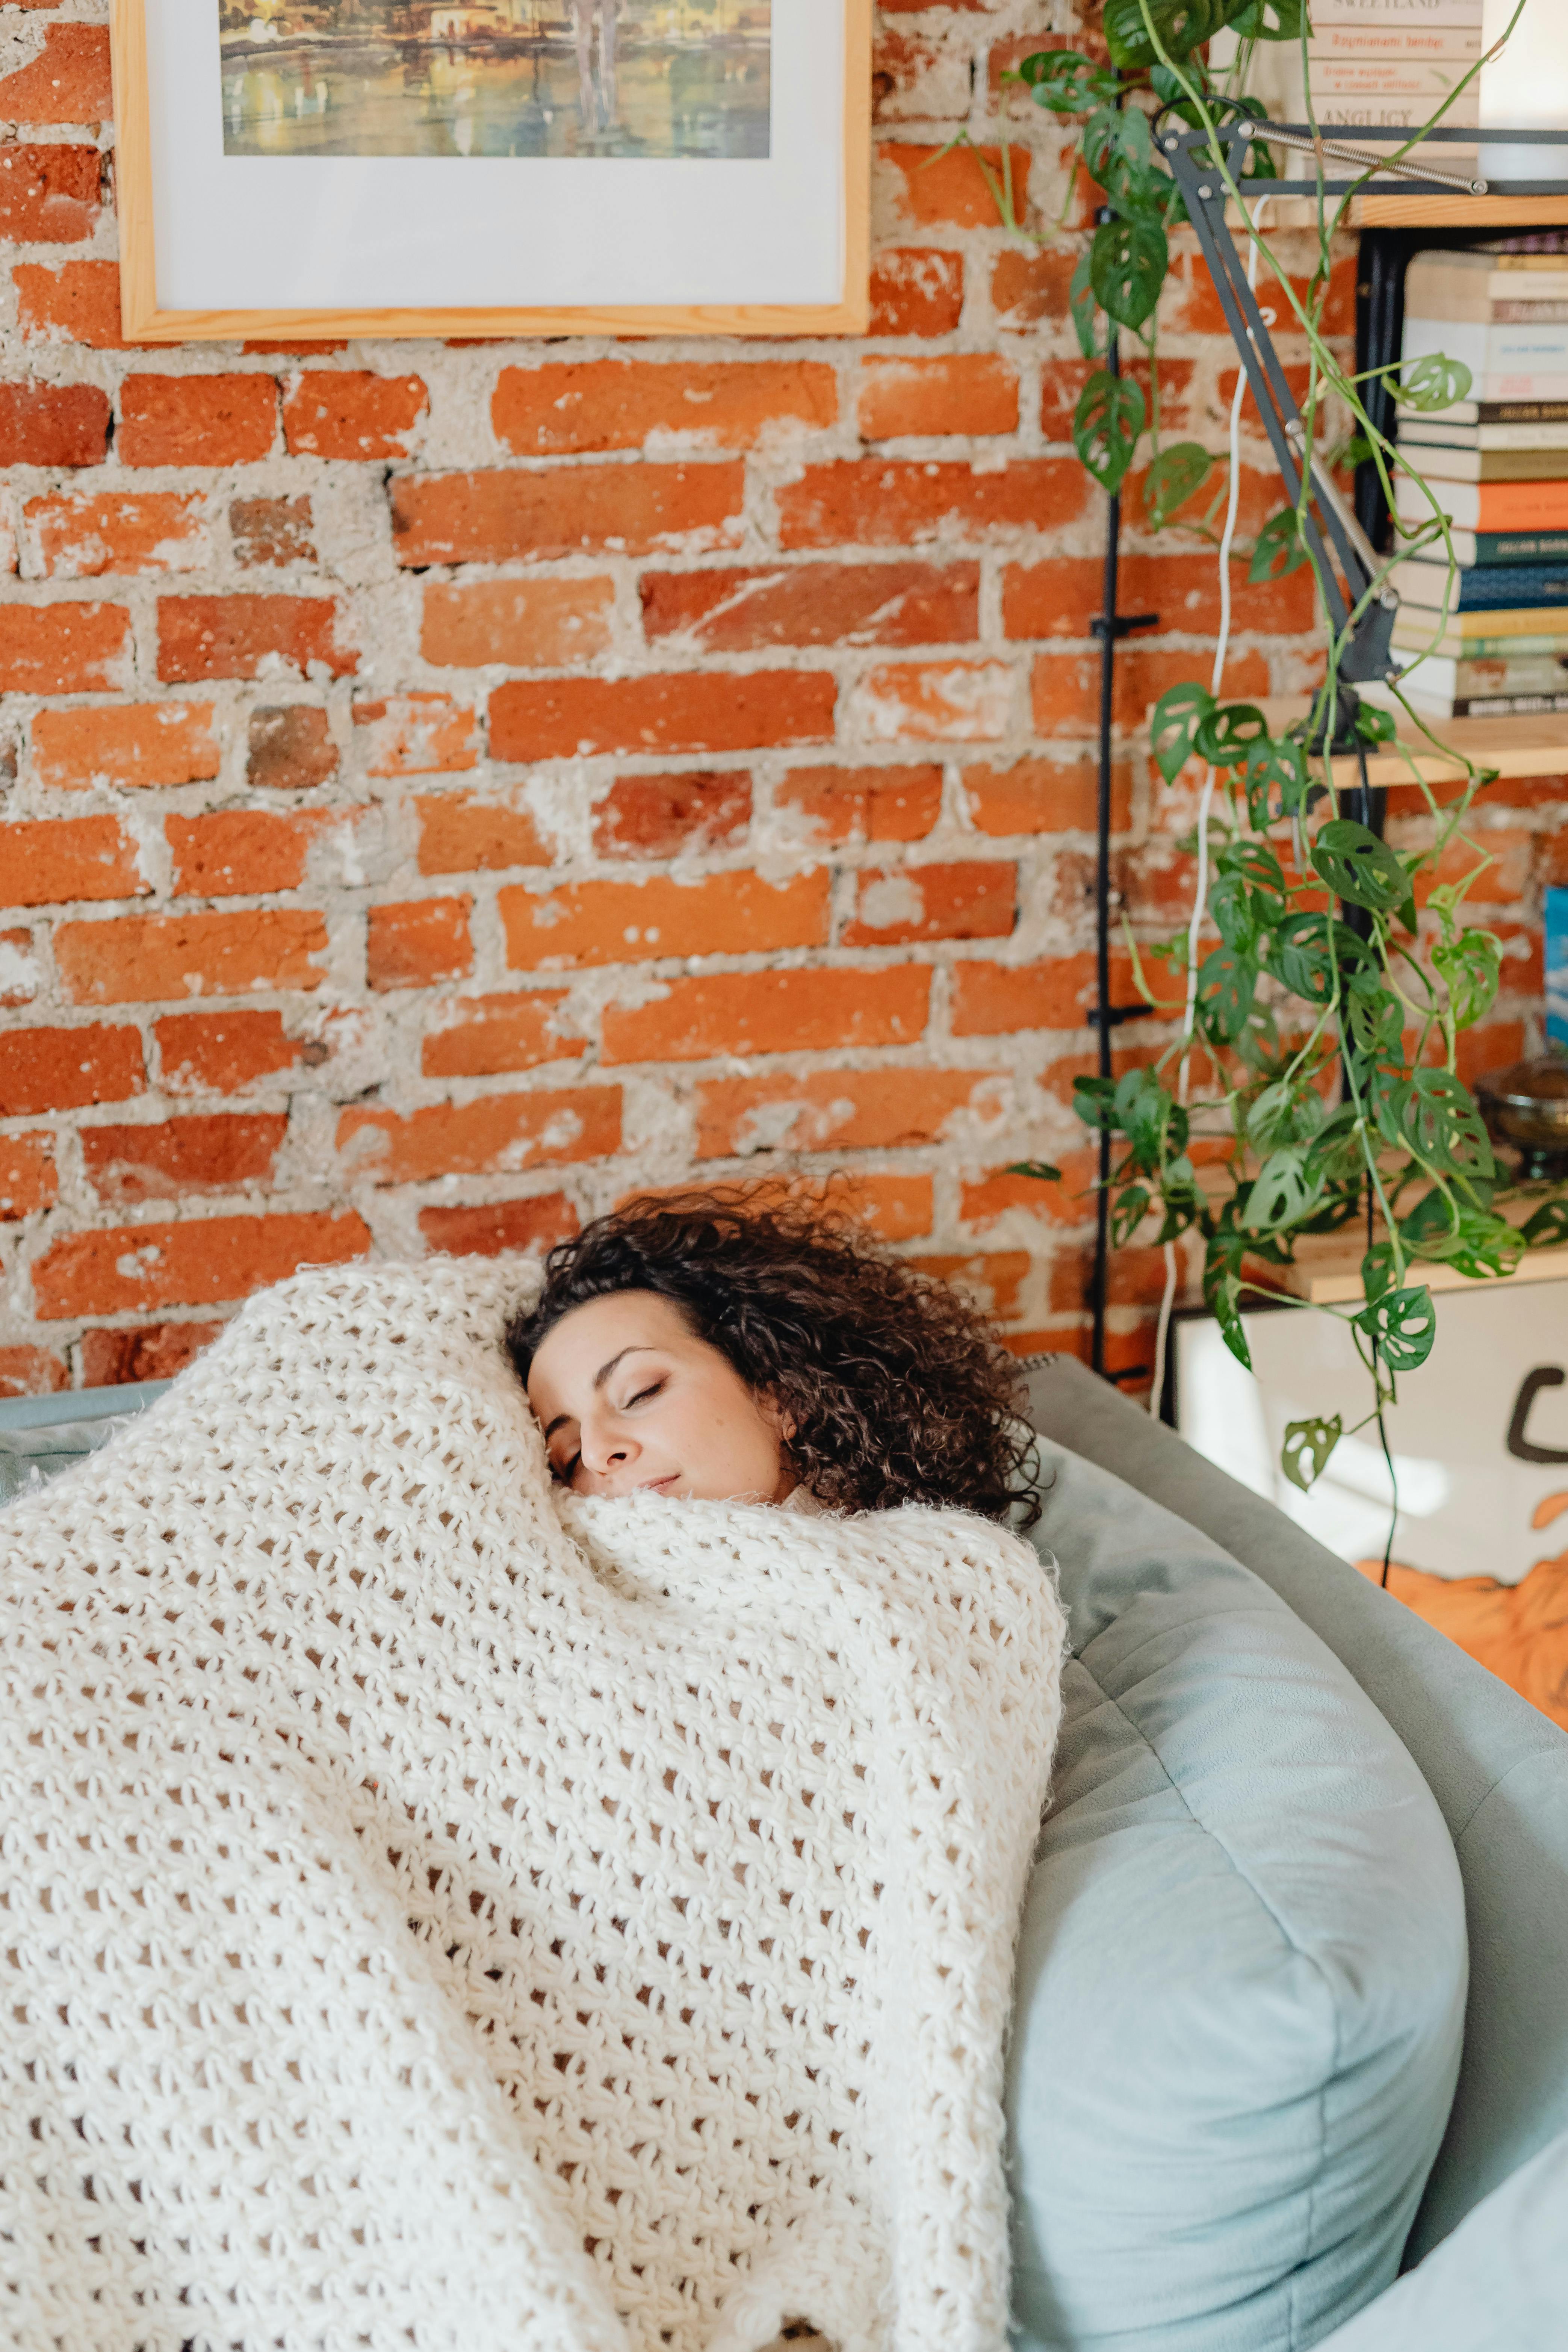 Une femme recouverte d'une couverture légère pendant son sommeil | Source : Pexels